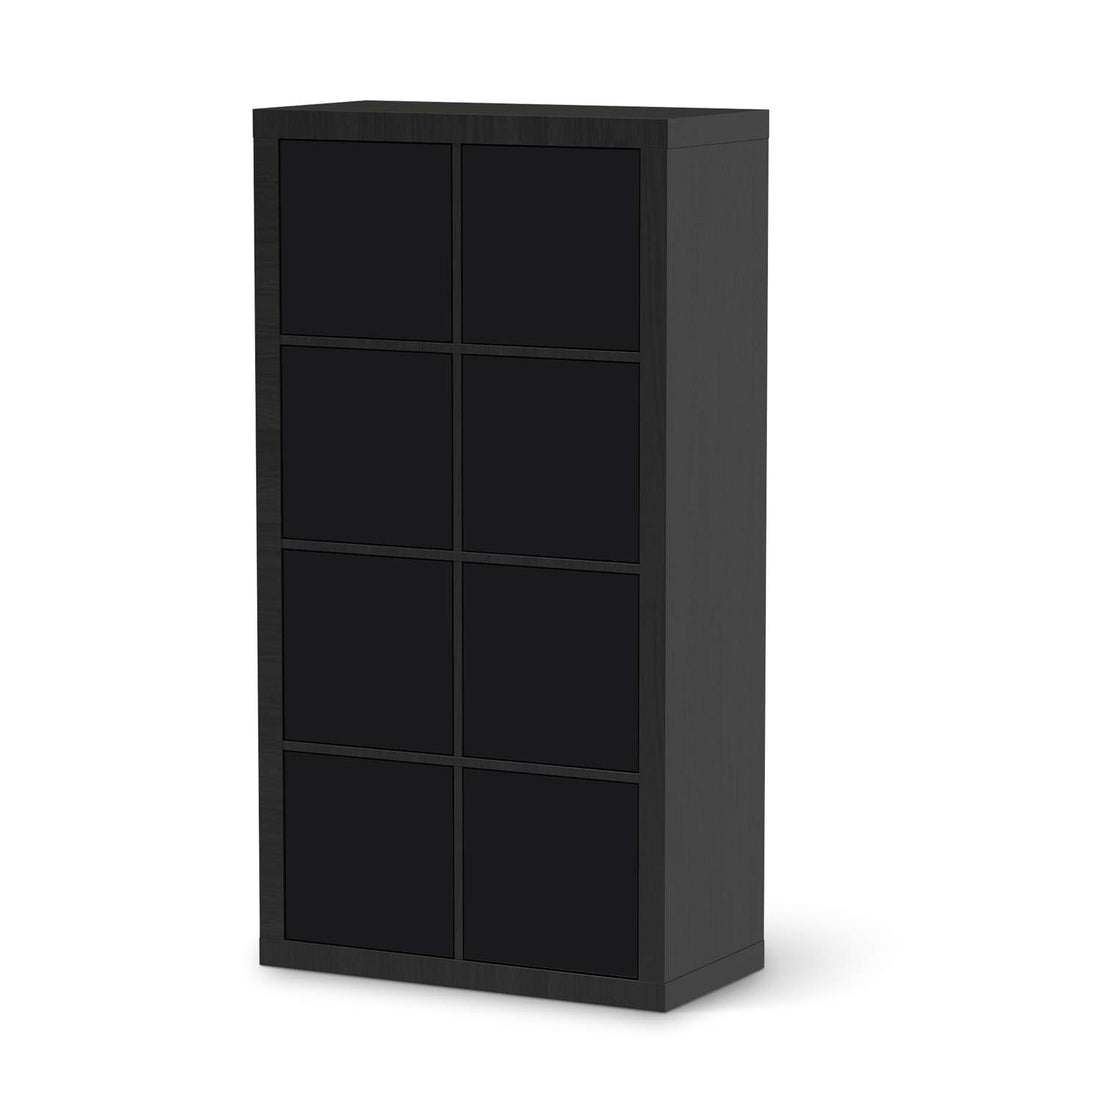 Folie für Möbel Schwarz - IKEA Kallax Regal 8 Türen - schwarz